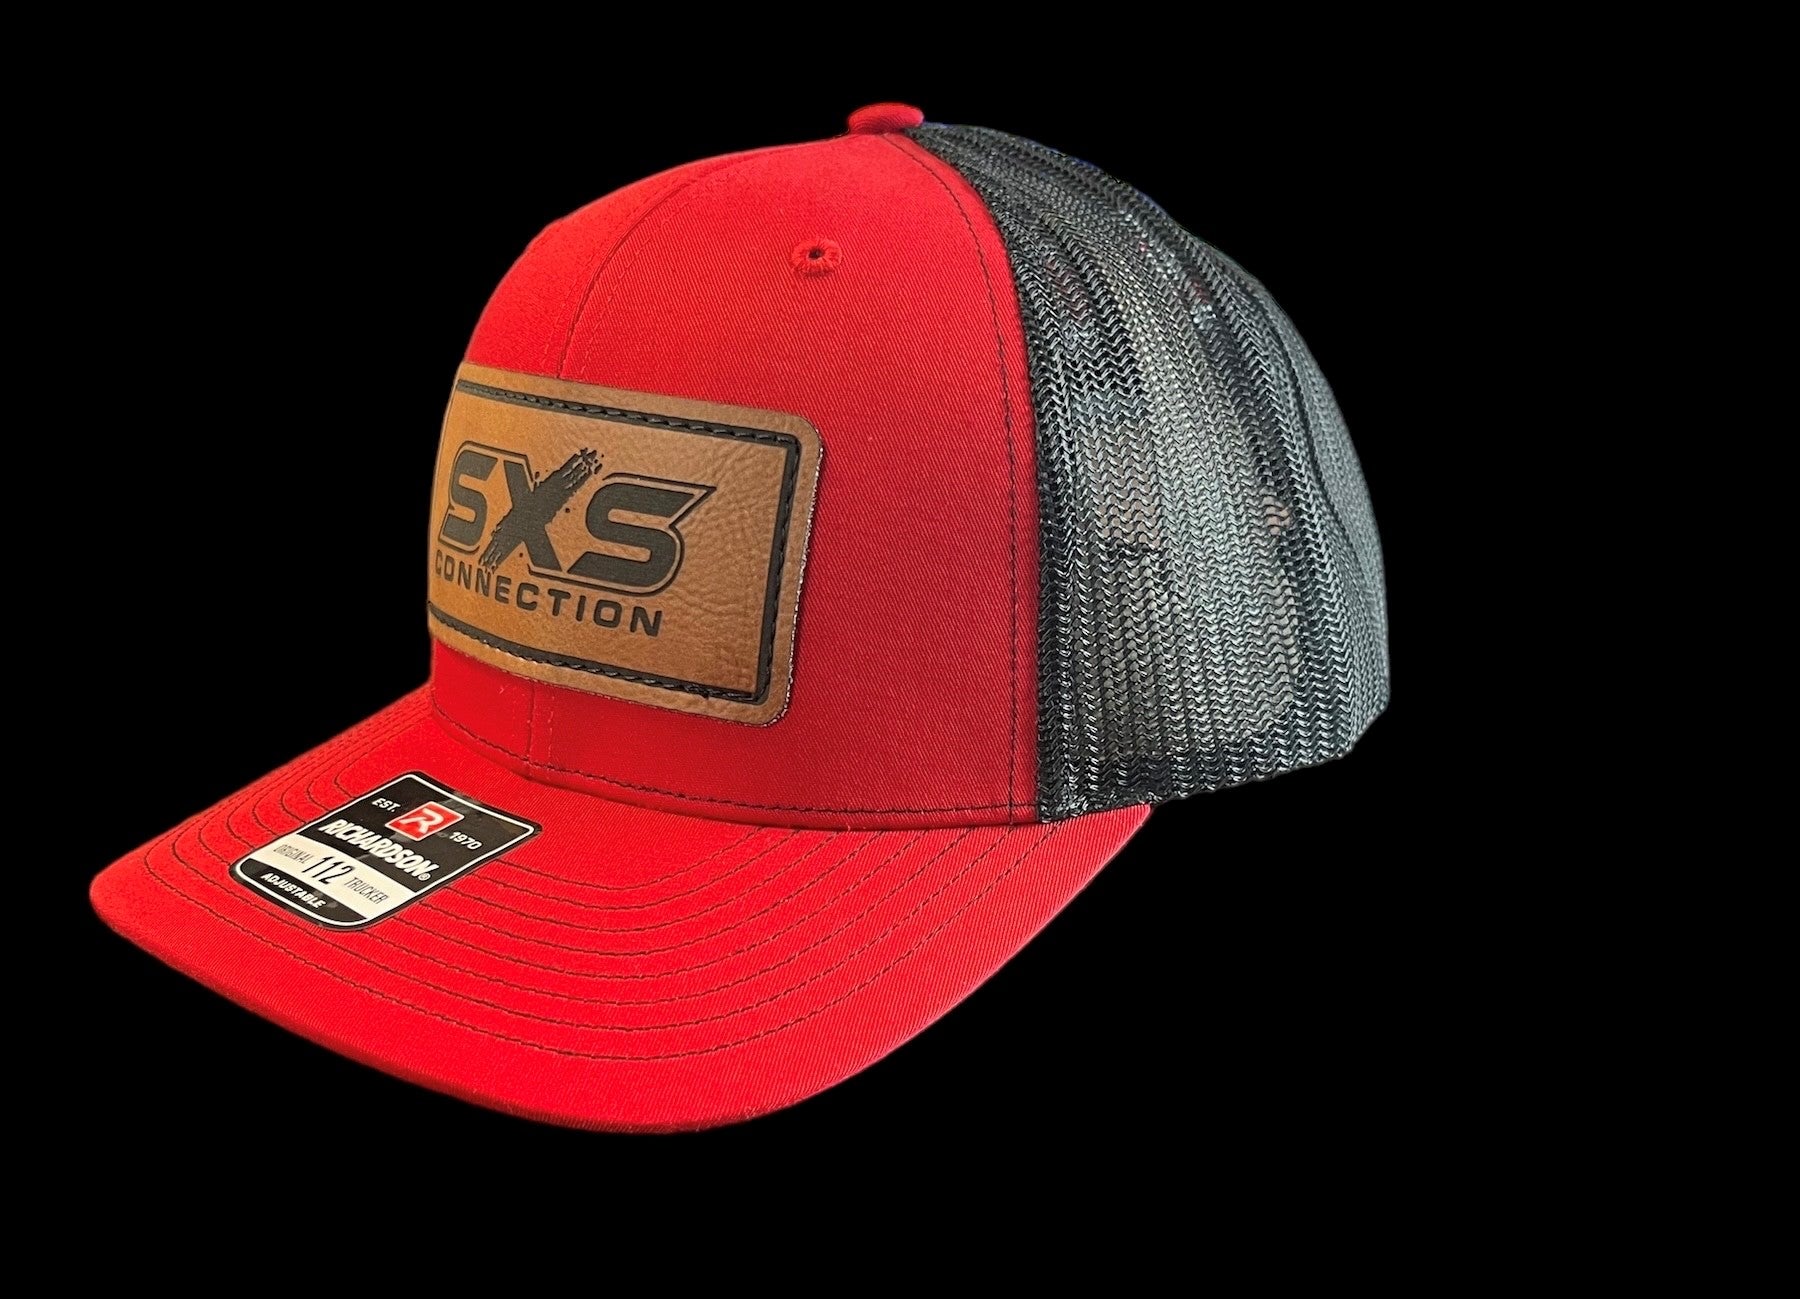 SXS Connection hat